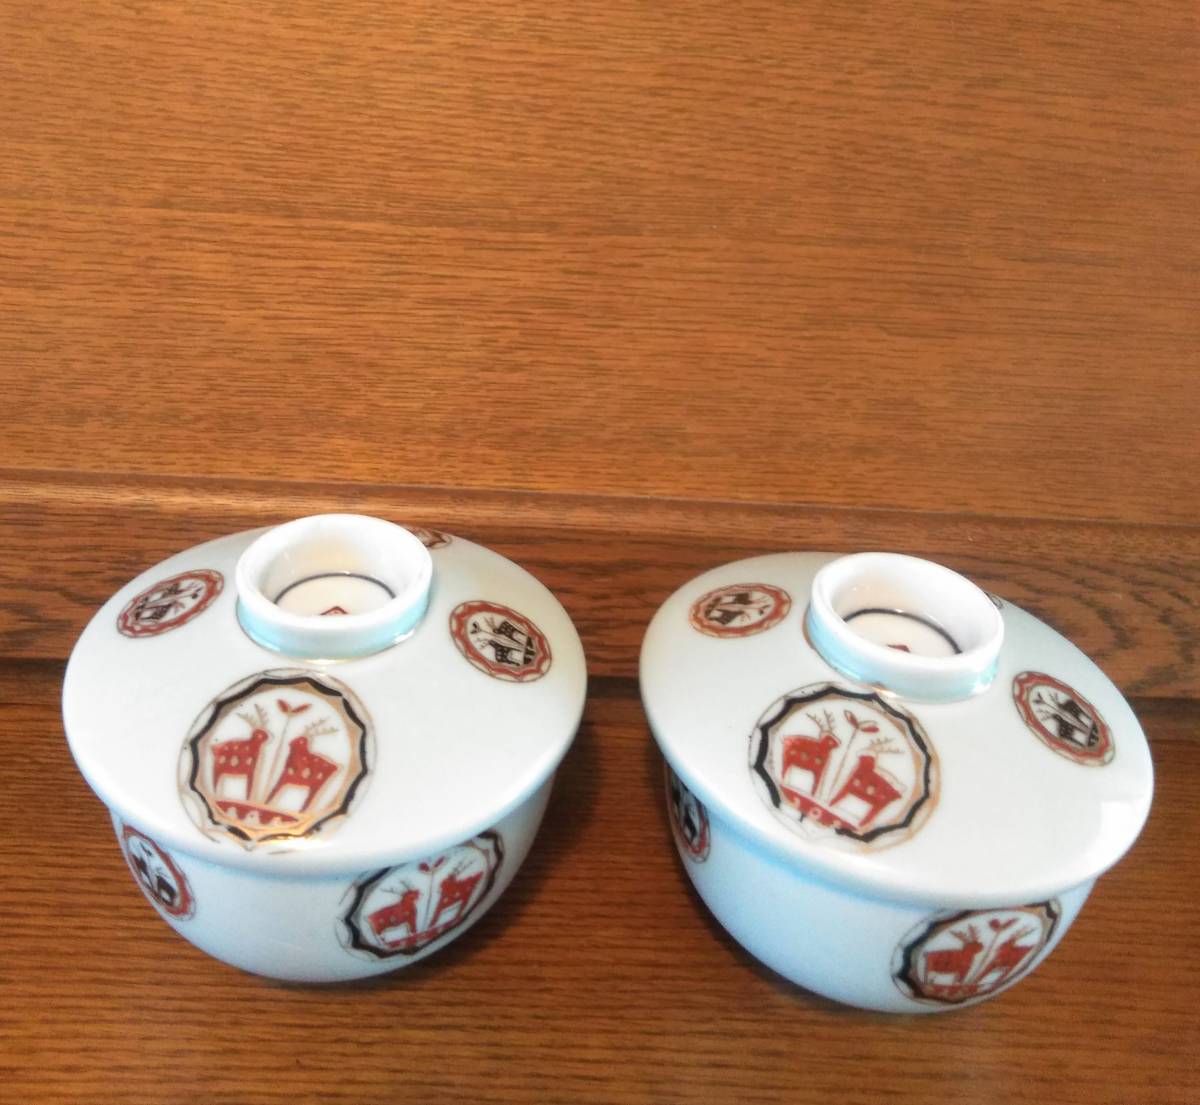 昭和 レトロ アンティーク レトロ食器 月弓 茶碗 蓋付きニ揃セット